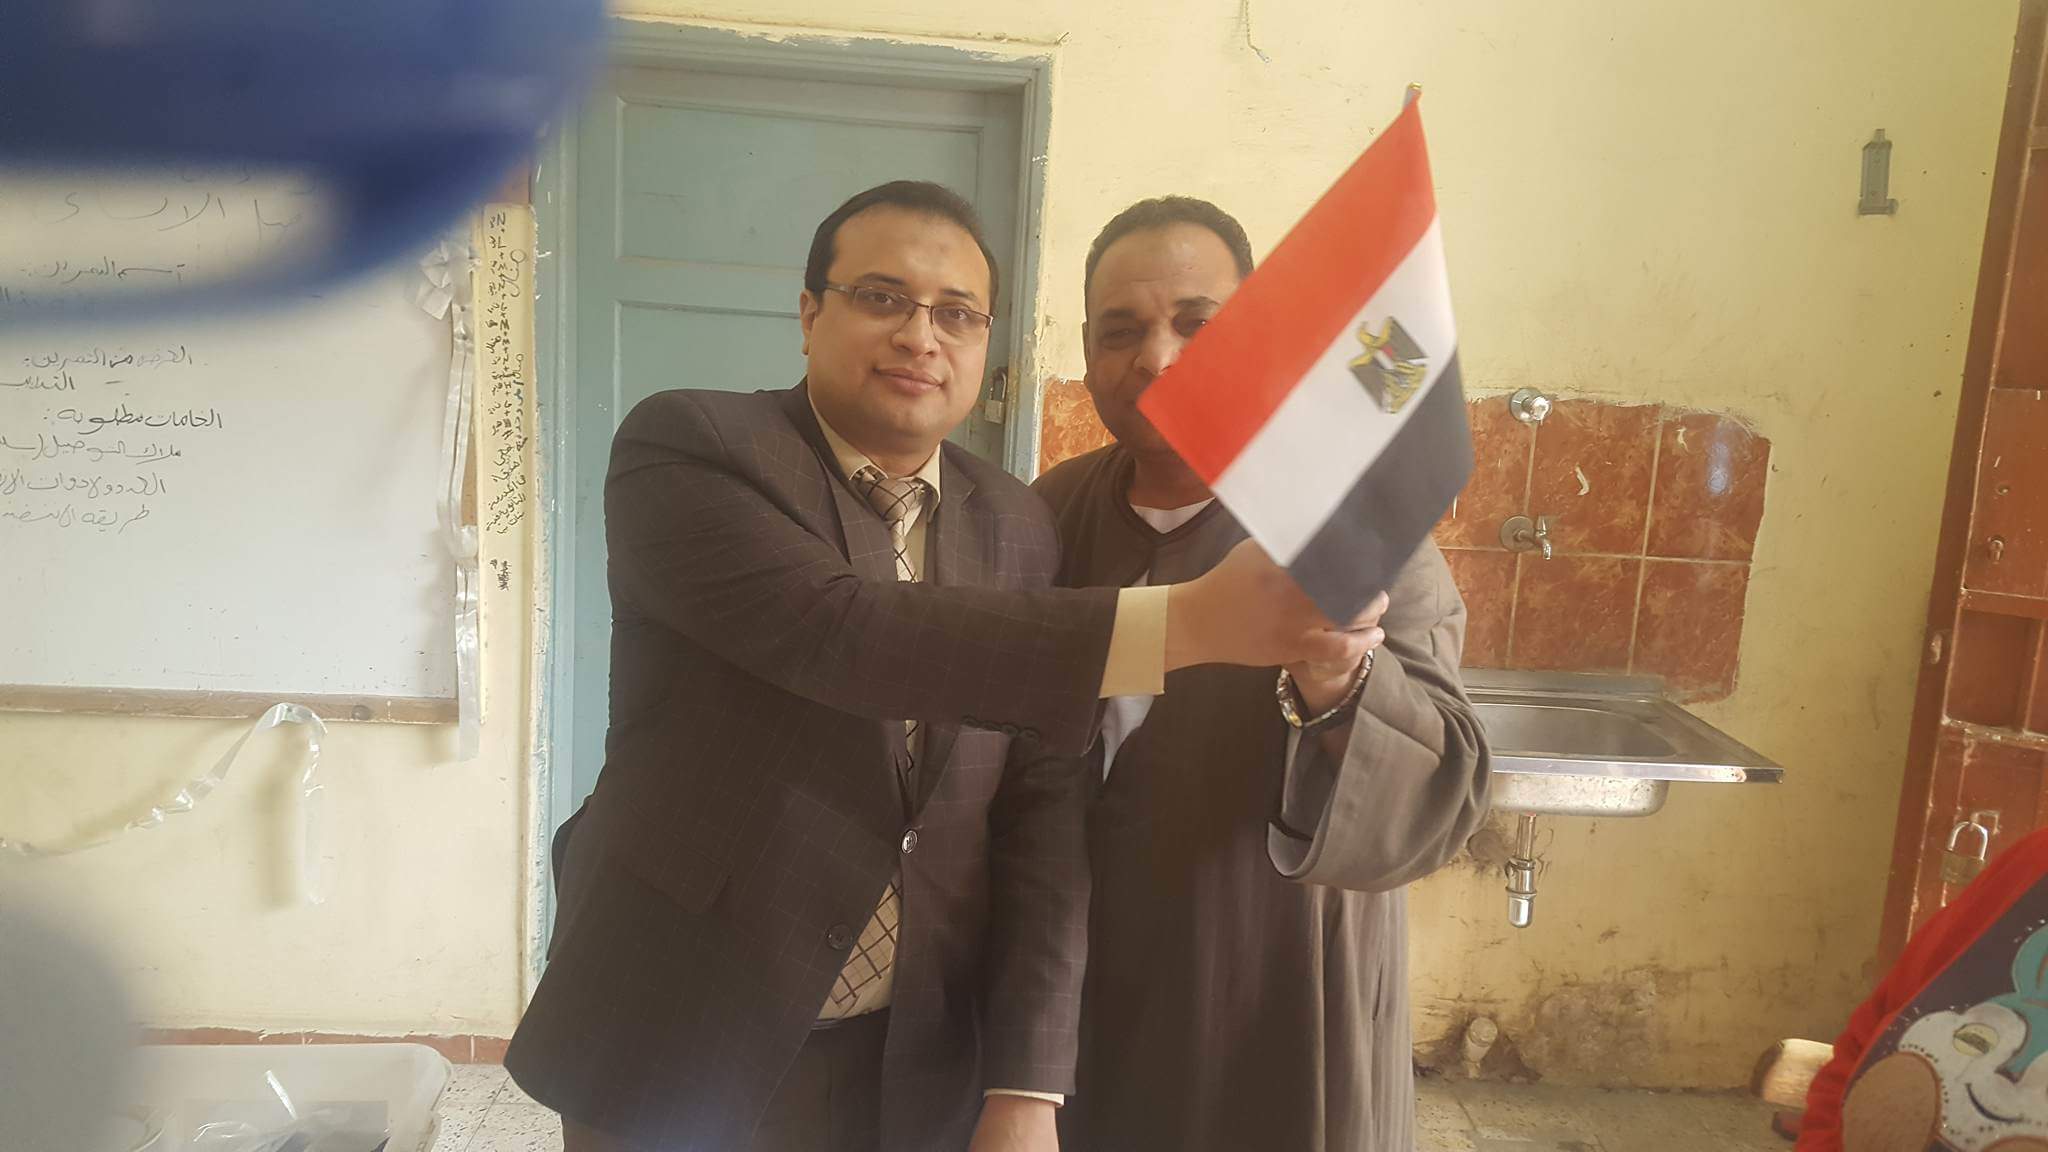 رئيس لجنة ببنى سويف يهدى علم مصر للمواطنين